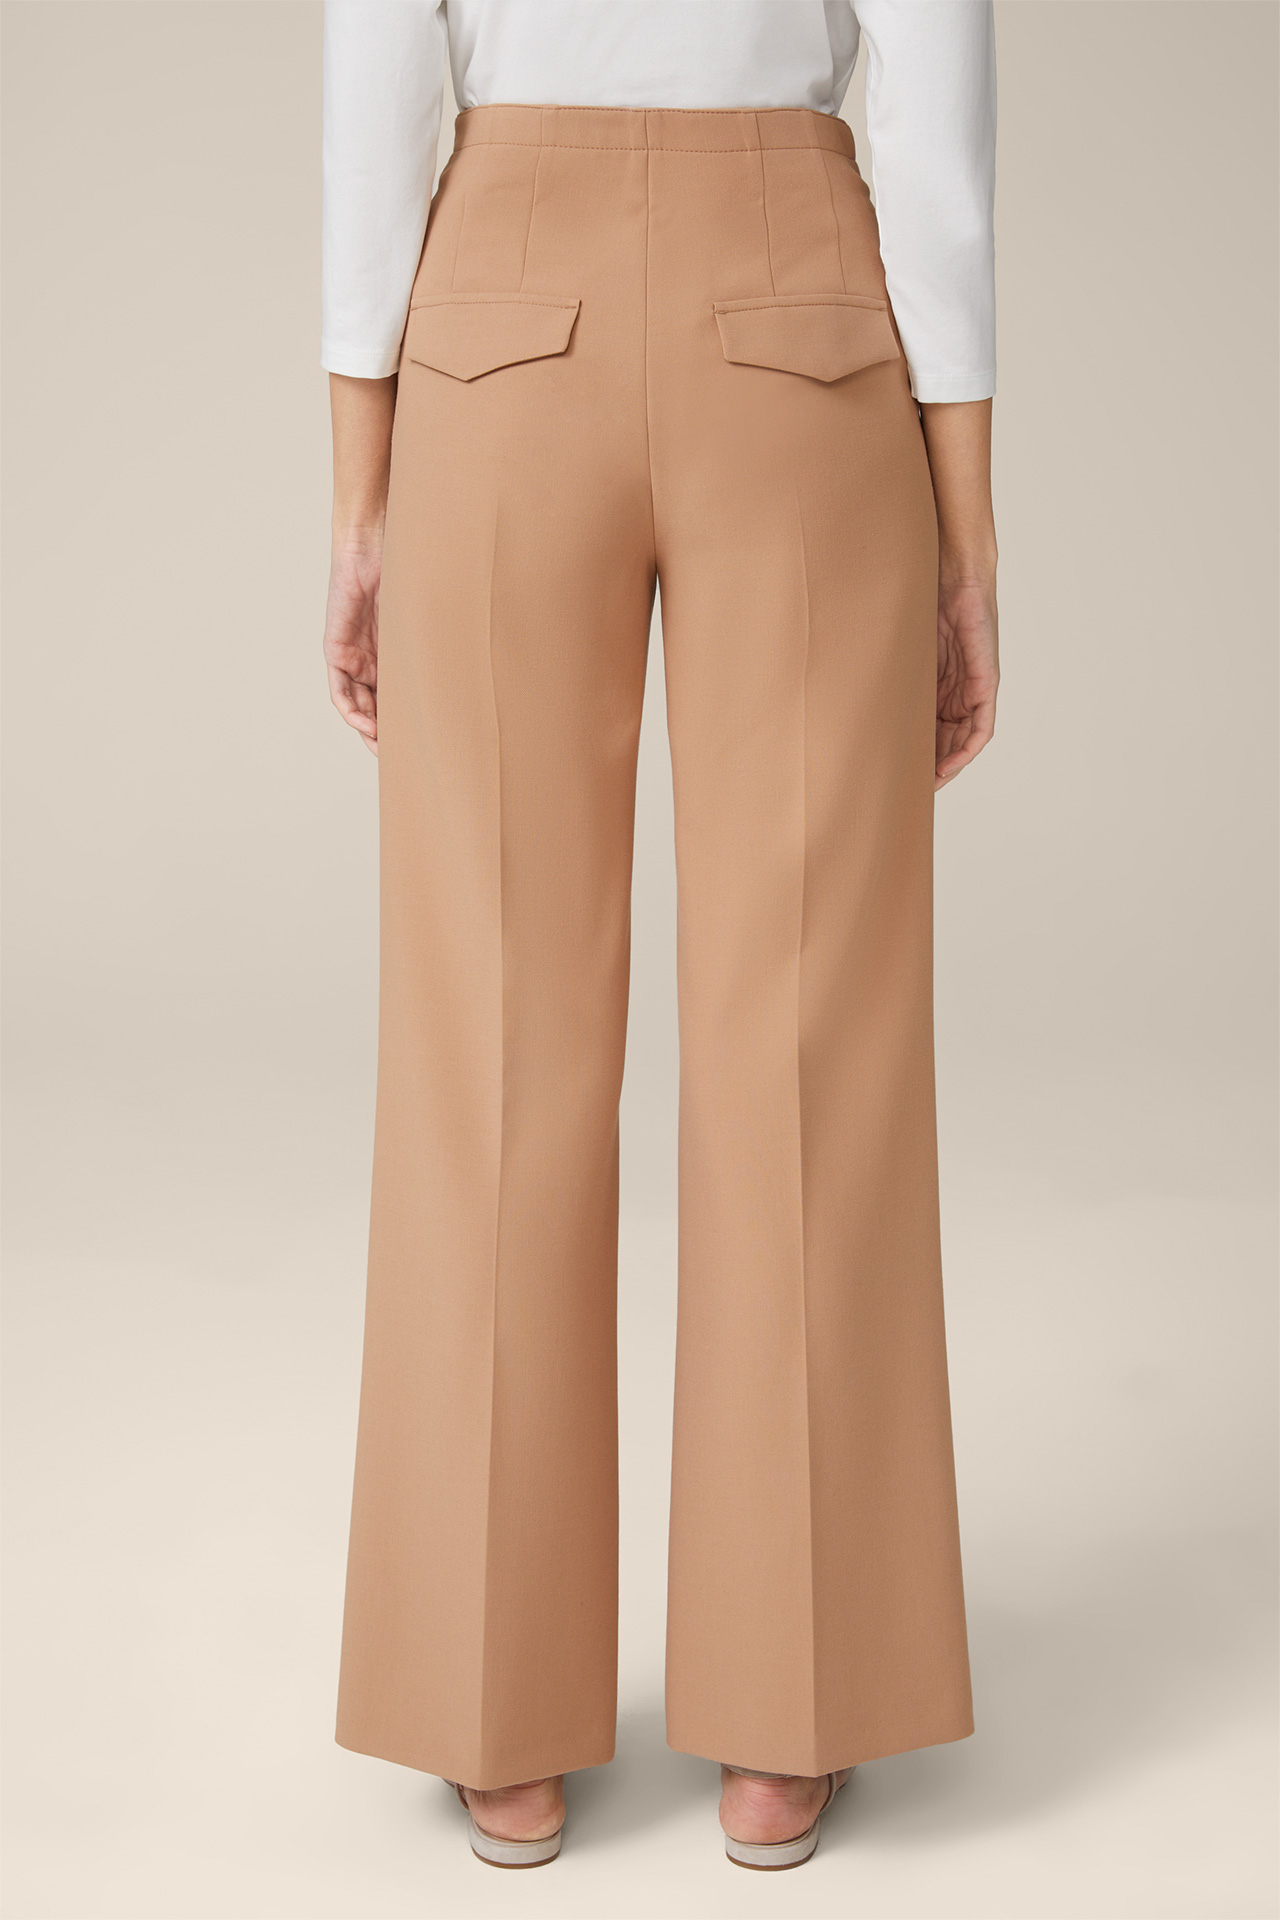 Pantalon Marlene en crêpe, couleur camel